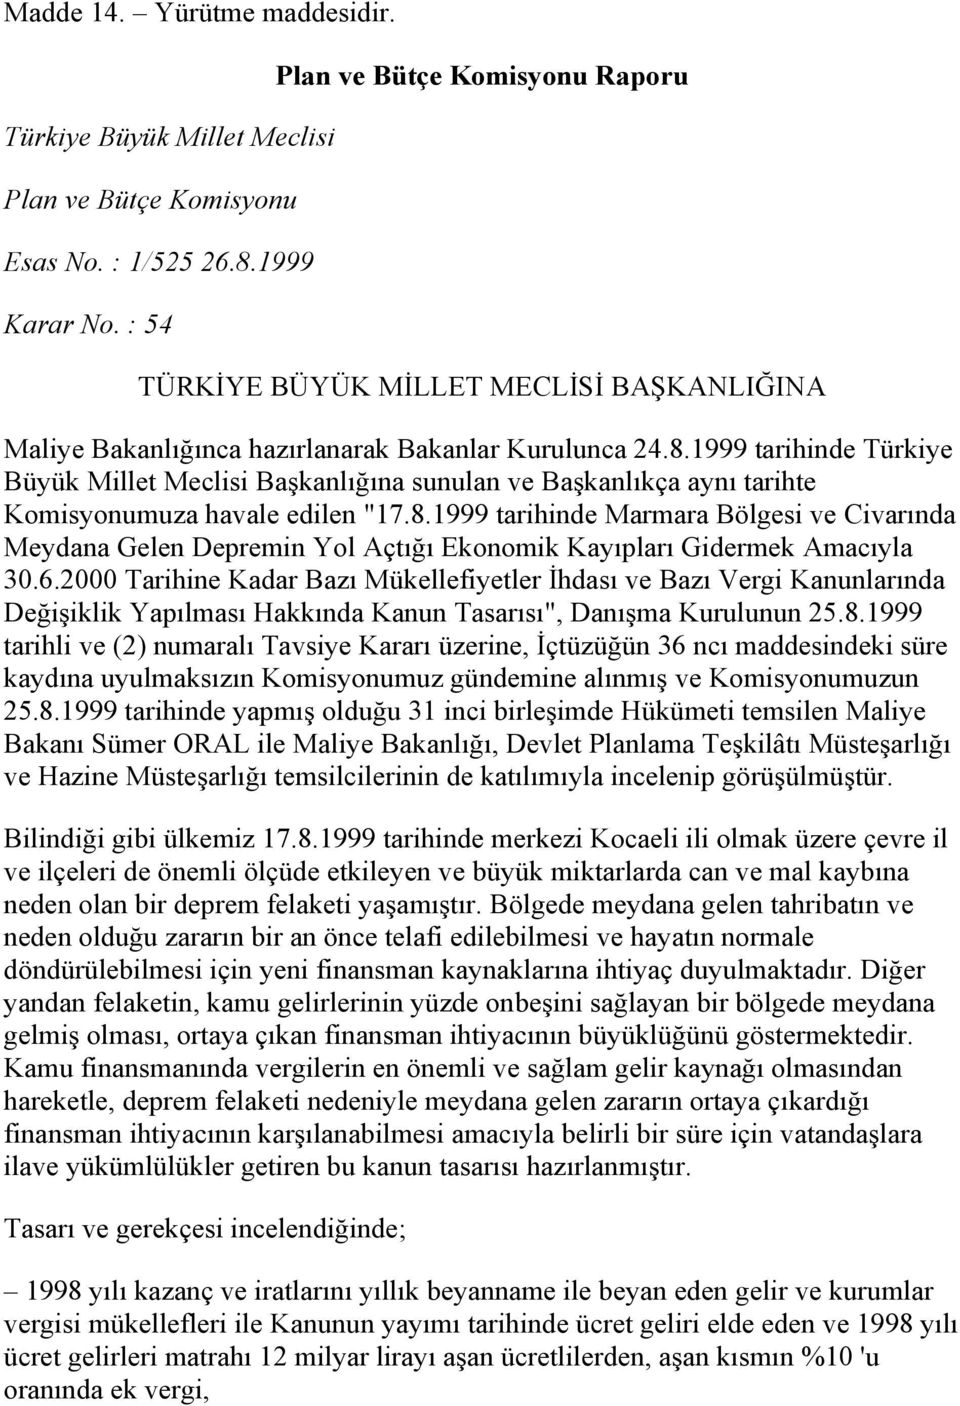 1999 tarihinde Türkiye Büyük Millet Meclisi Başkanlığına sunulan ve Başkanlıkça aynı tarihte Komisyonumuza havale edilen "17.8.